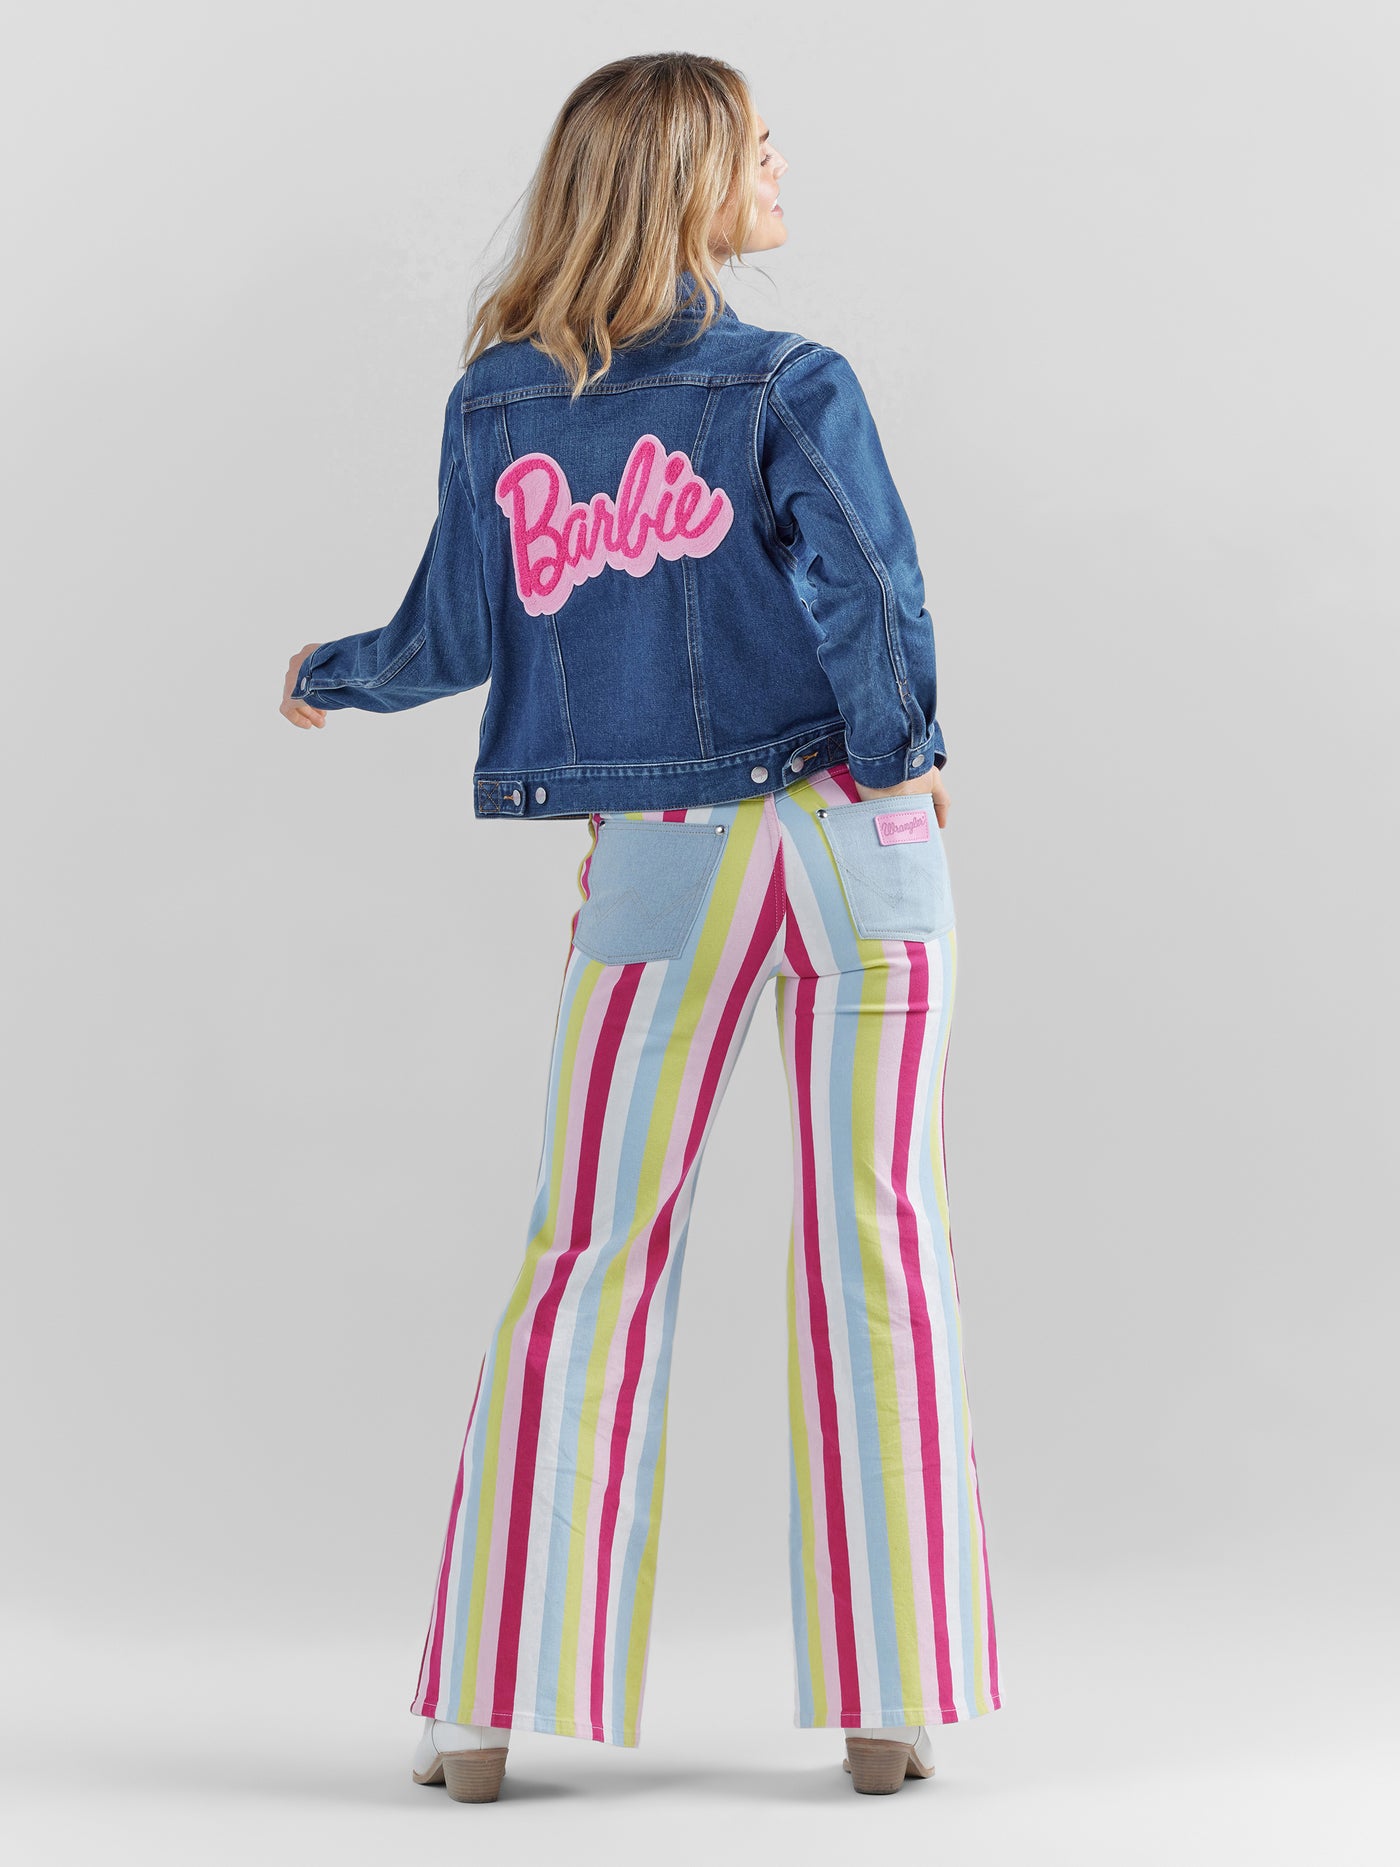 Wrangler Women's Barbie Wanderer High Rise Flare Jean